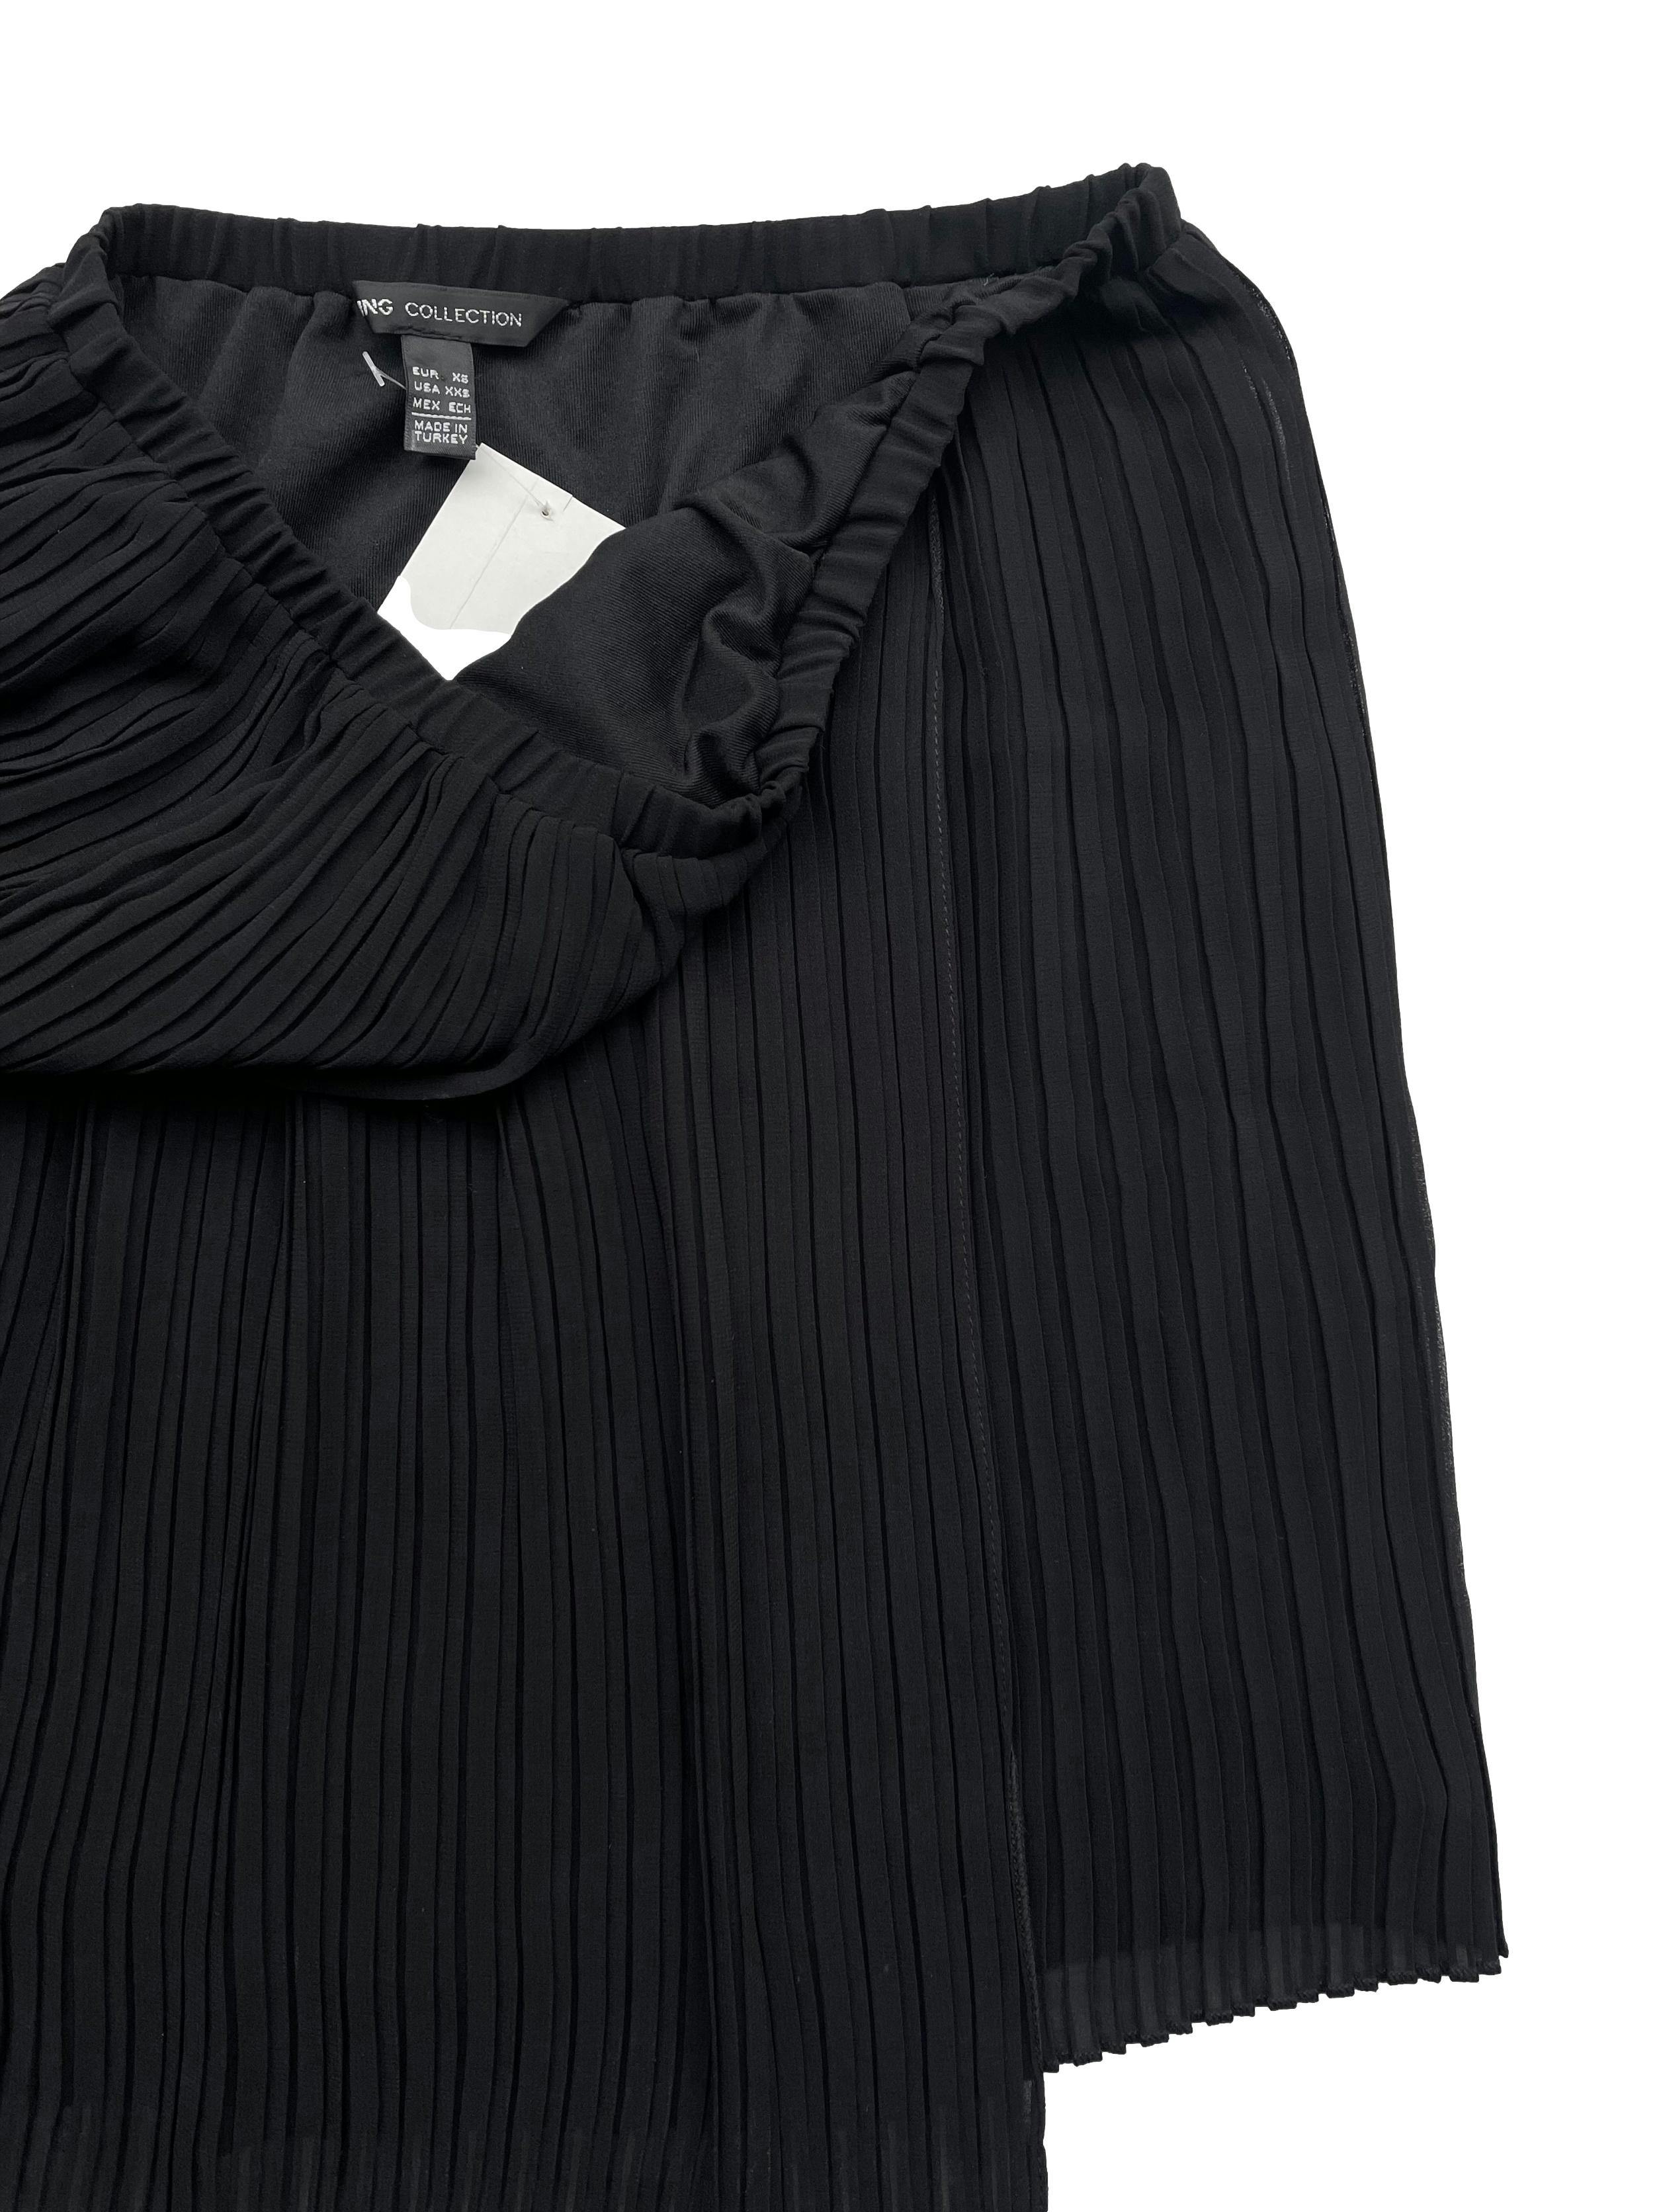 Mini falda Mango de gasa plisada negra con forro, estilo envolvente con basta asimétrica y cintura elástica. Largo 40cm.